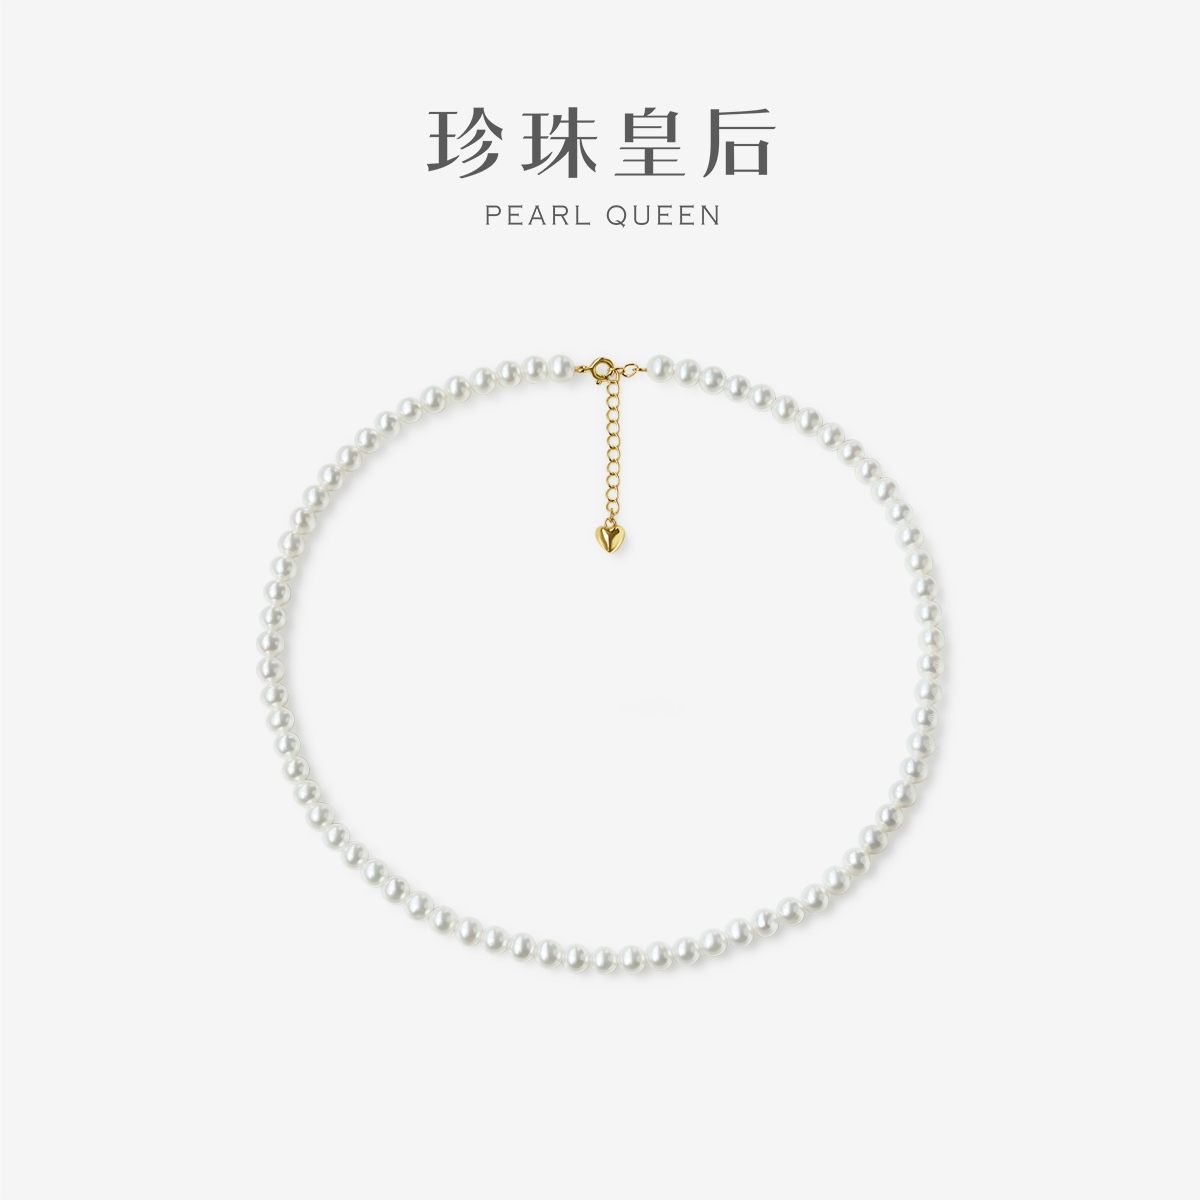 珍珠皇后 极强光淡水珍珠项链S925银小米珠baby珍珠锁骨链